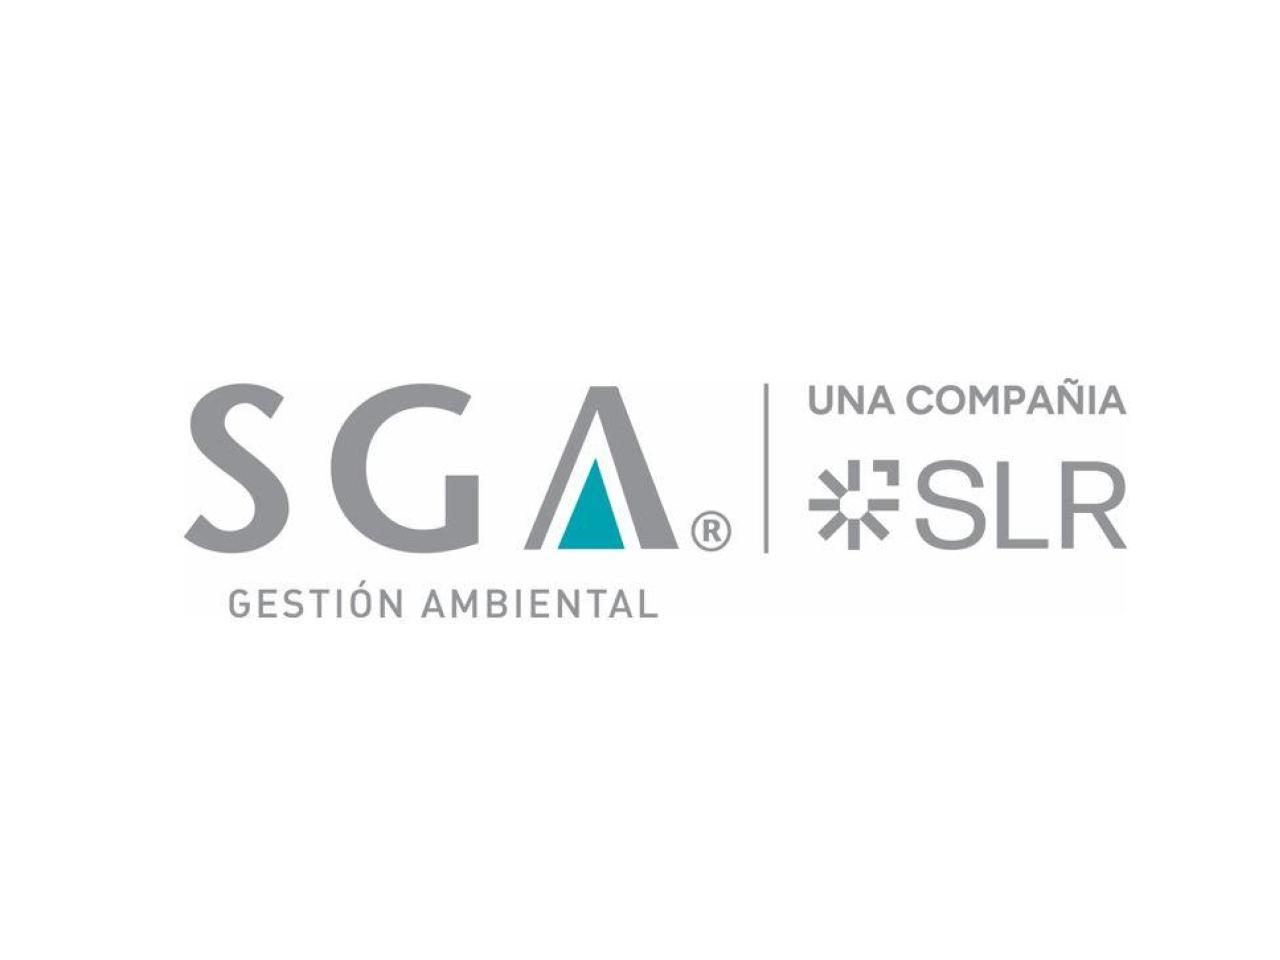 SGA and SLR logo